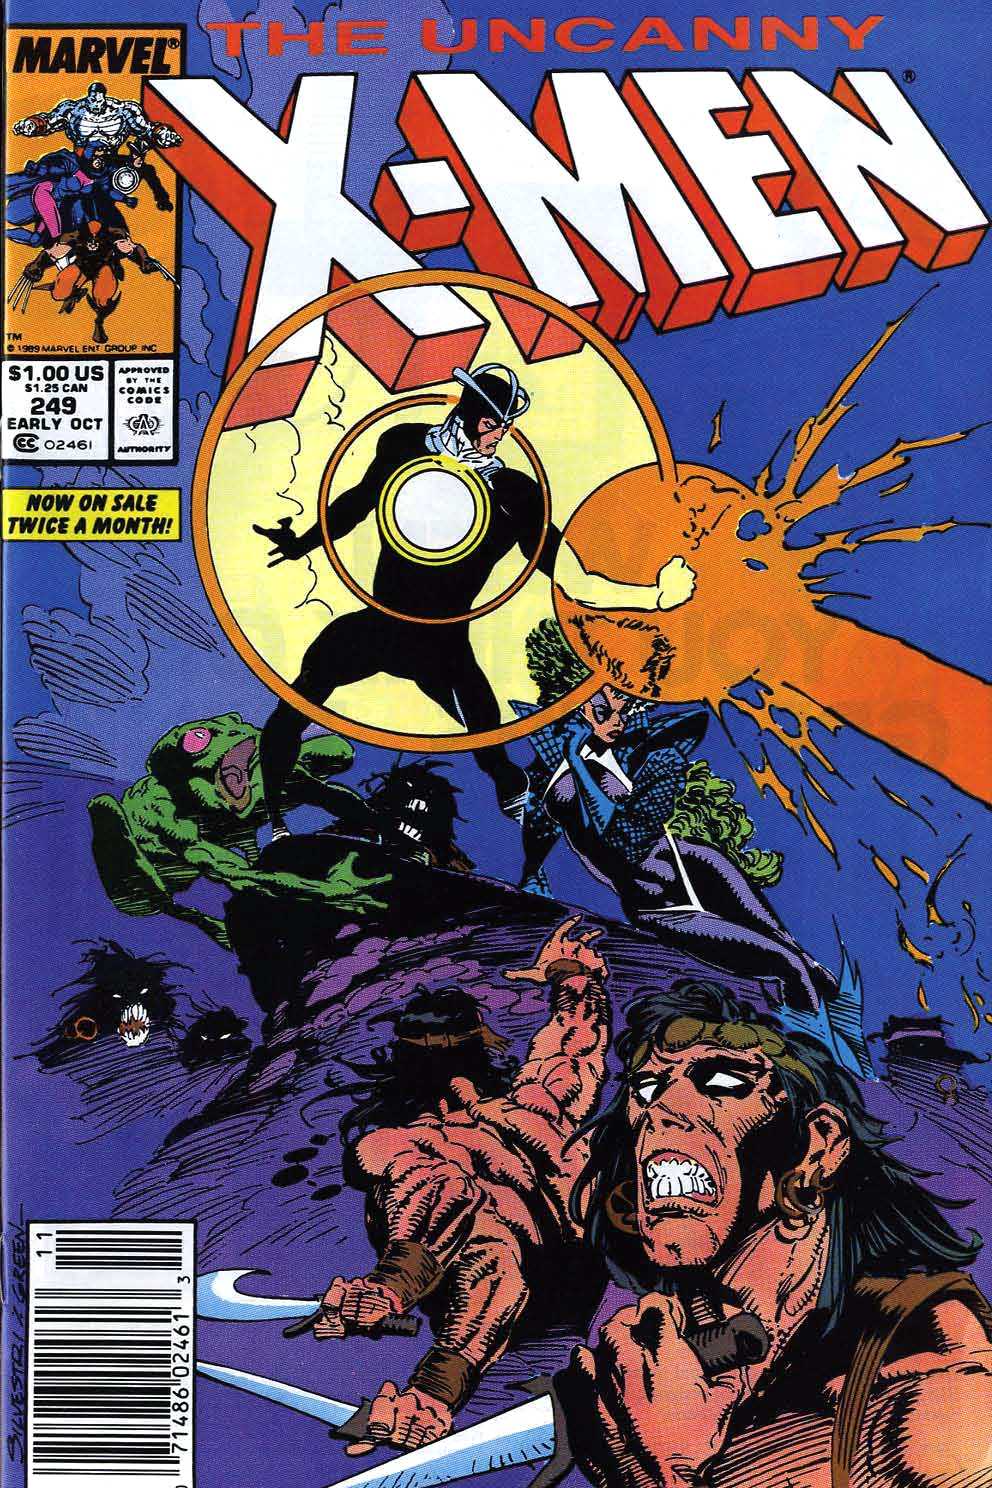 Uncanny X-Men Vol. 1 #249